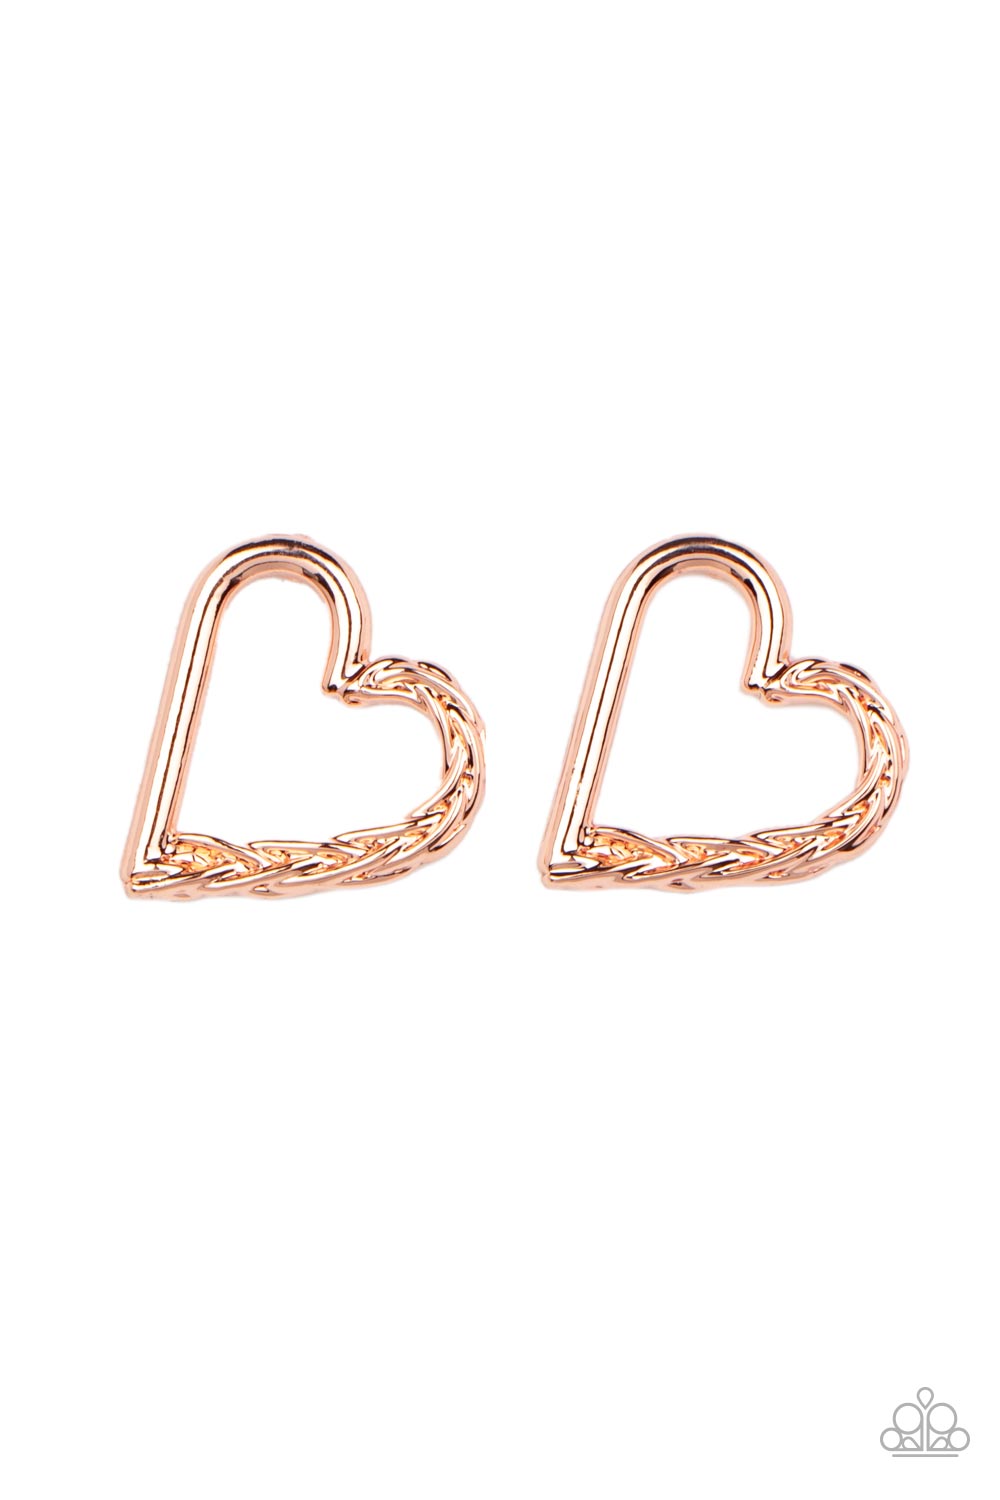 Cupid, Who? Copper-Earrings